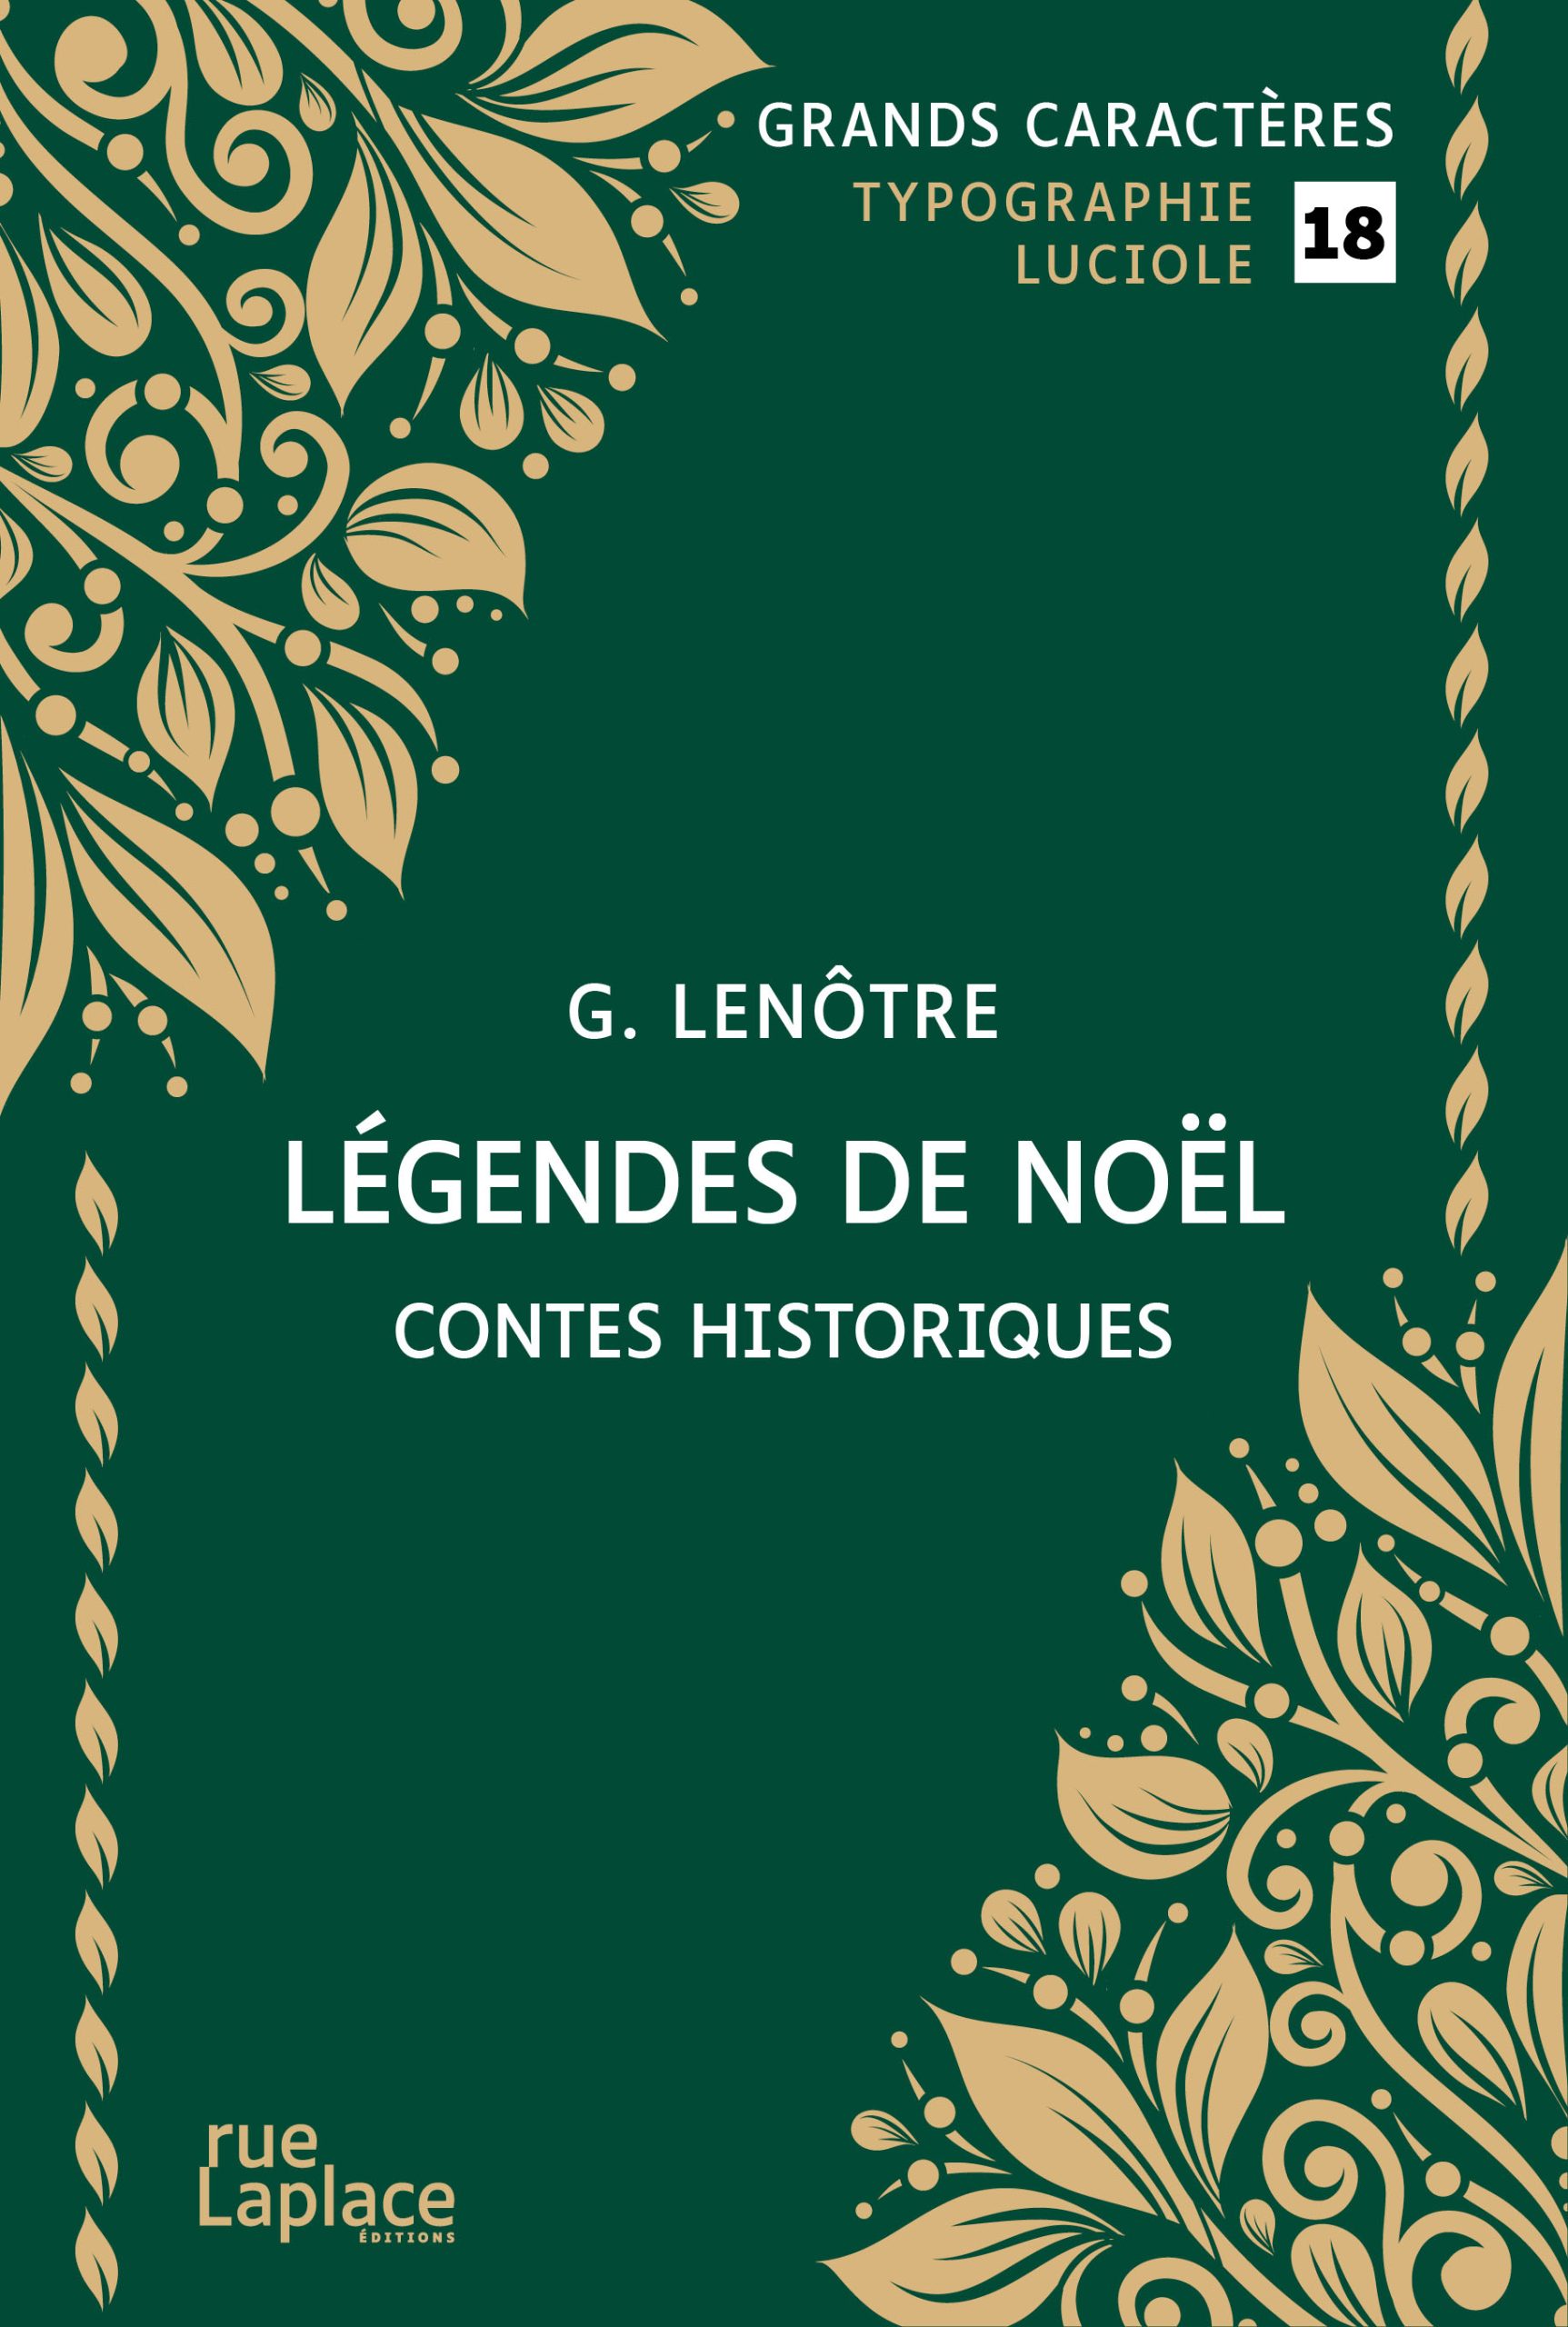 Couverture du livre en grands caractères Légendes de Noël, contes historiques de G. Lenôtre